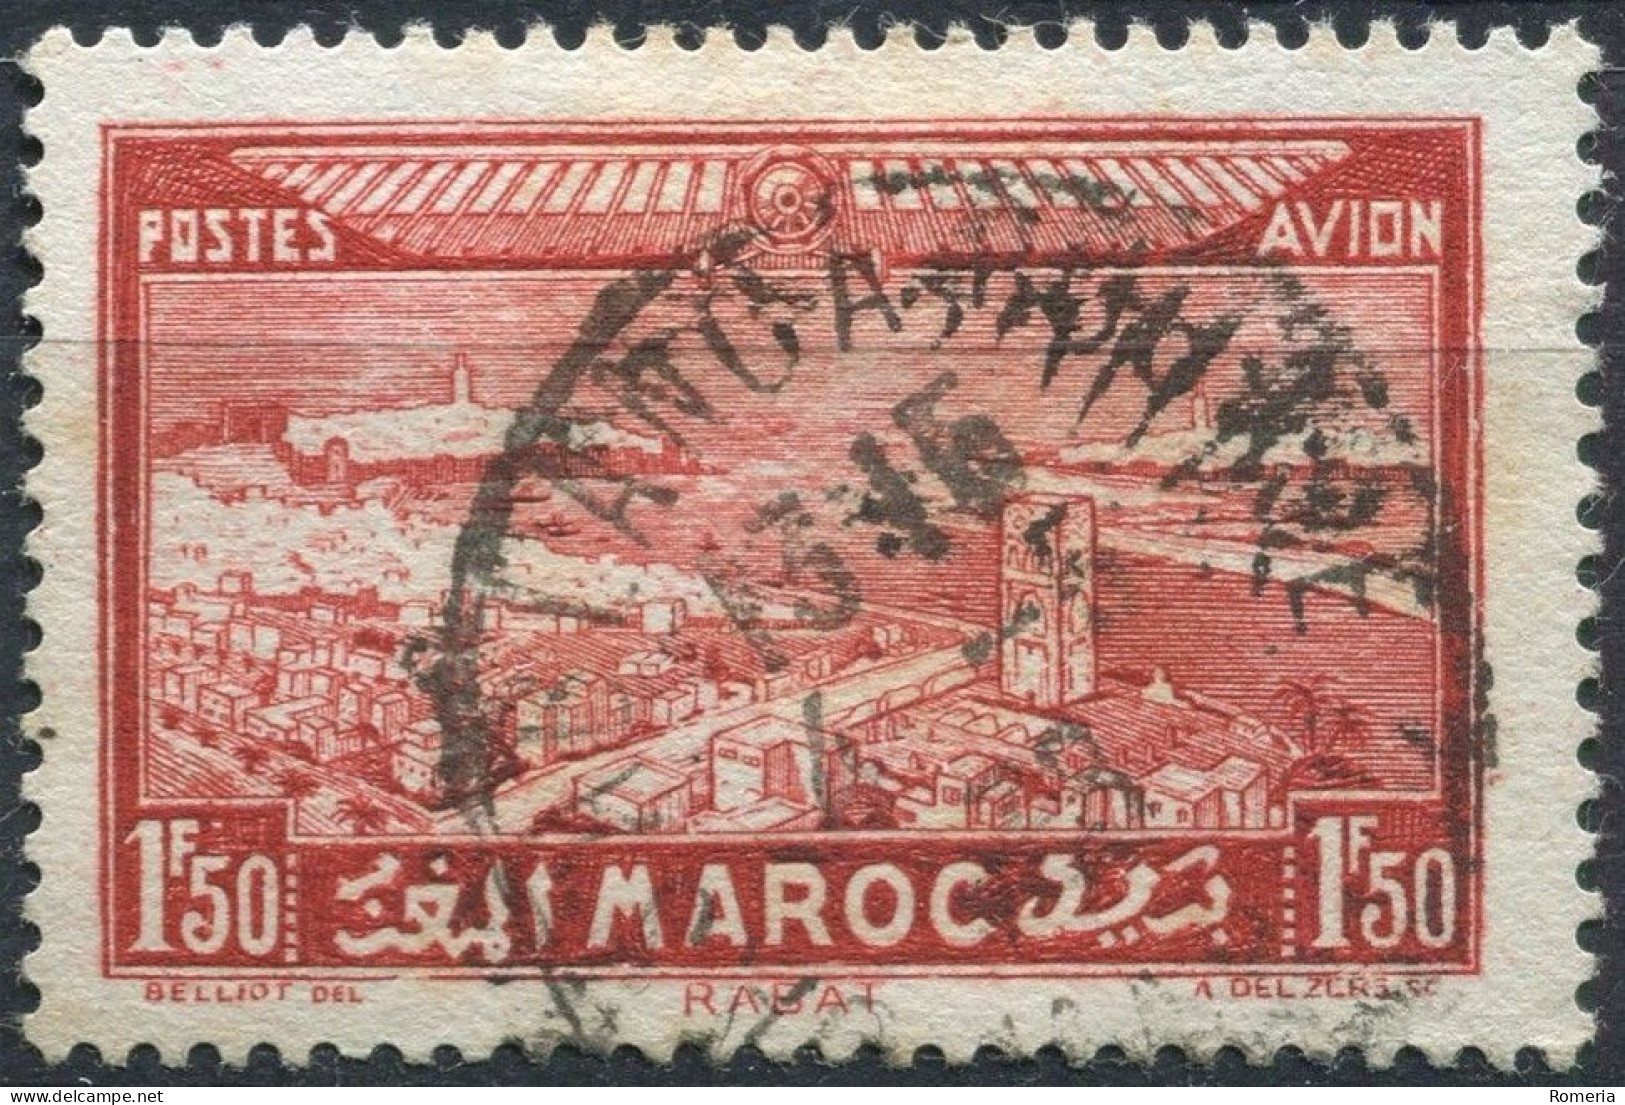 Maroc - 1922 -> 1955 - Lot Poste aérienne oblitérés - Nºs dans description